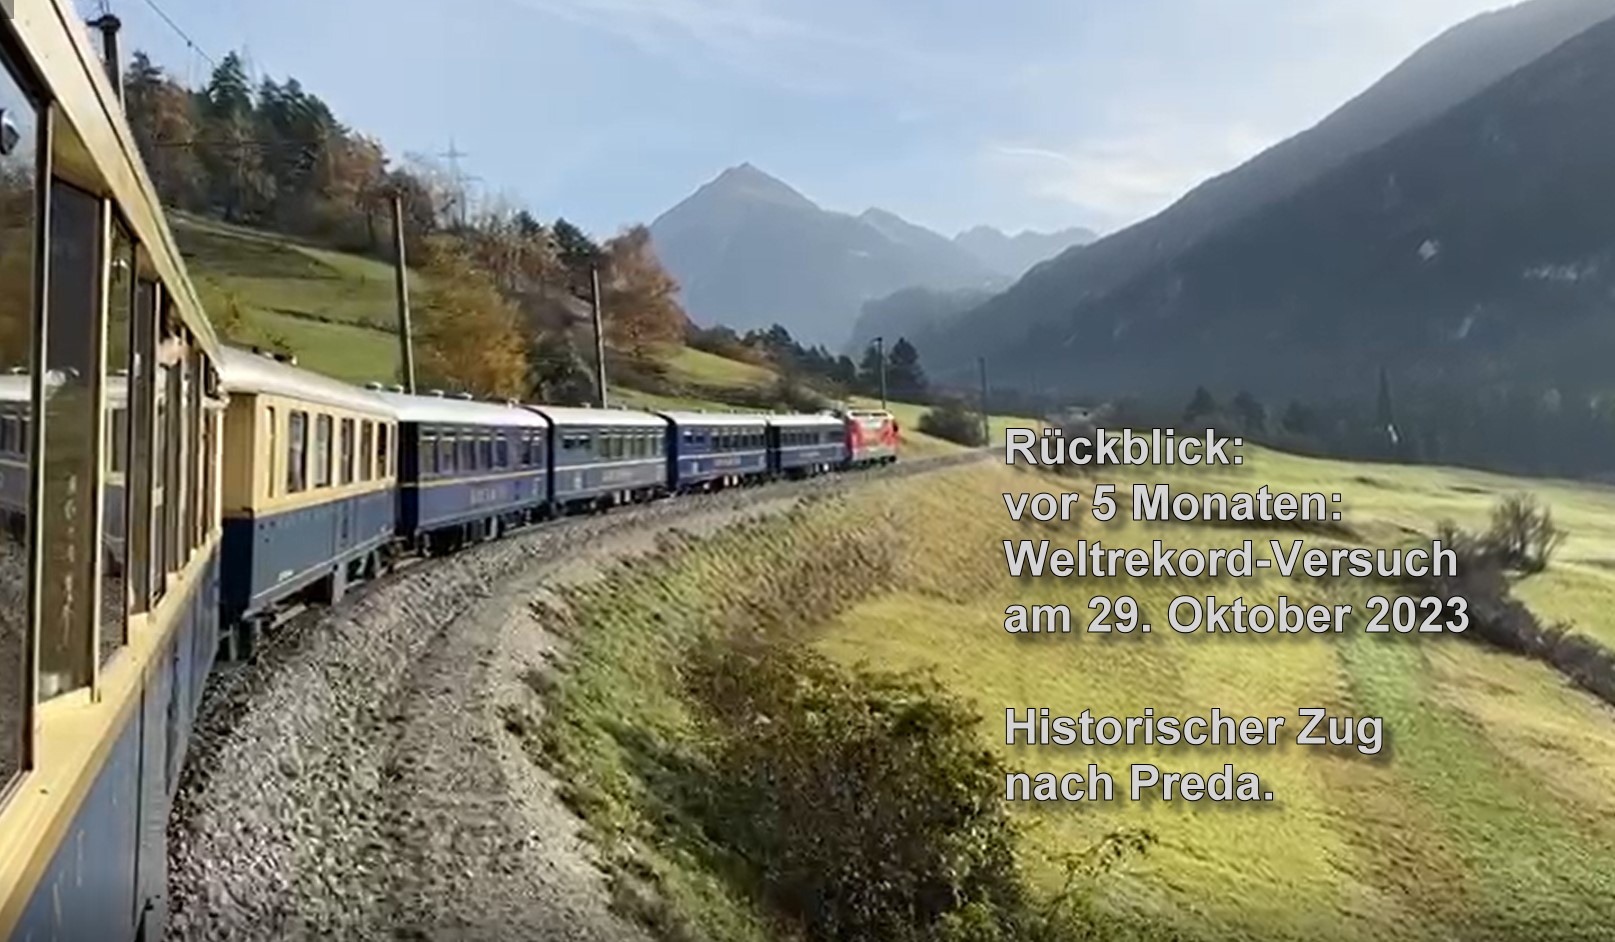 Hendrik Hauschild und LGB haben nun, nach 5 Monaten, nochmals ein VIDEO veröffentlicht. Es zeigt die Anfahrt zum "Weltrekord-Versuch" am 29. Oktober 2022 von Chur nach Preda mit der "Weltrekordlok" und den "Gourmino" Restaurant und blauen Pullmann Wagen. 